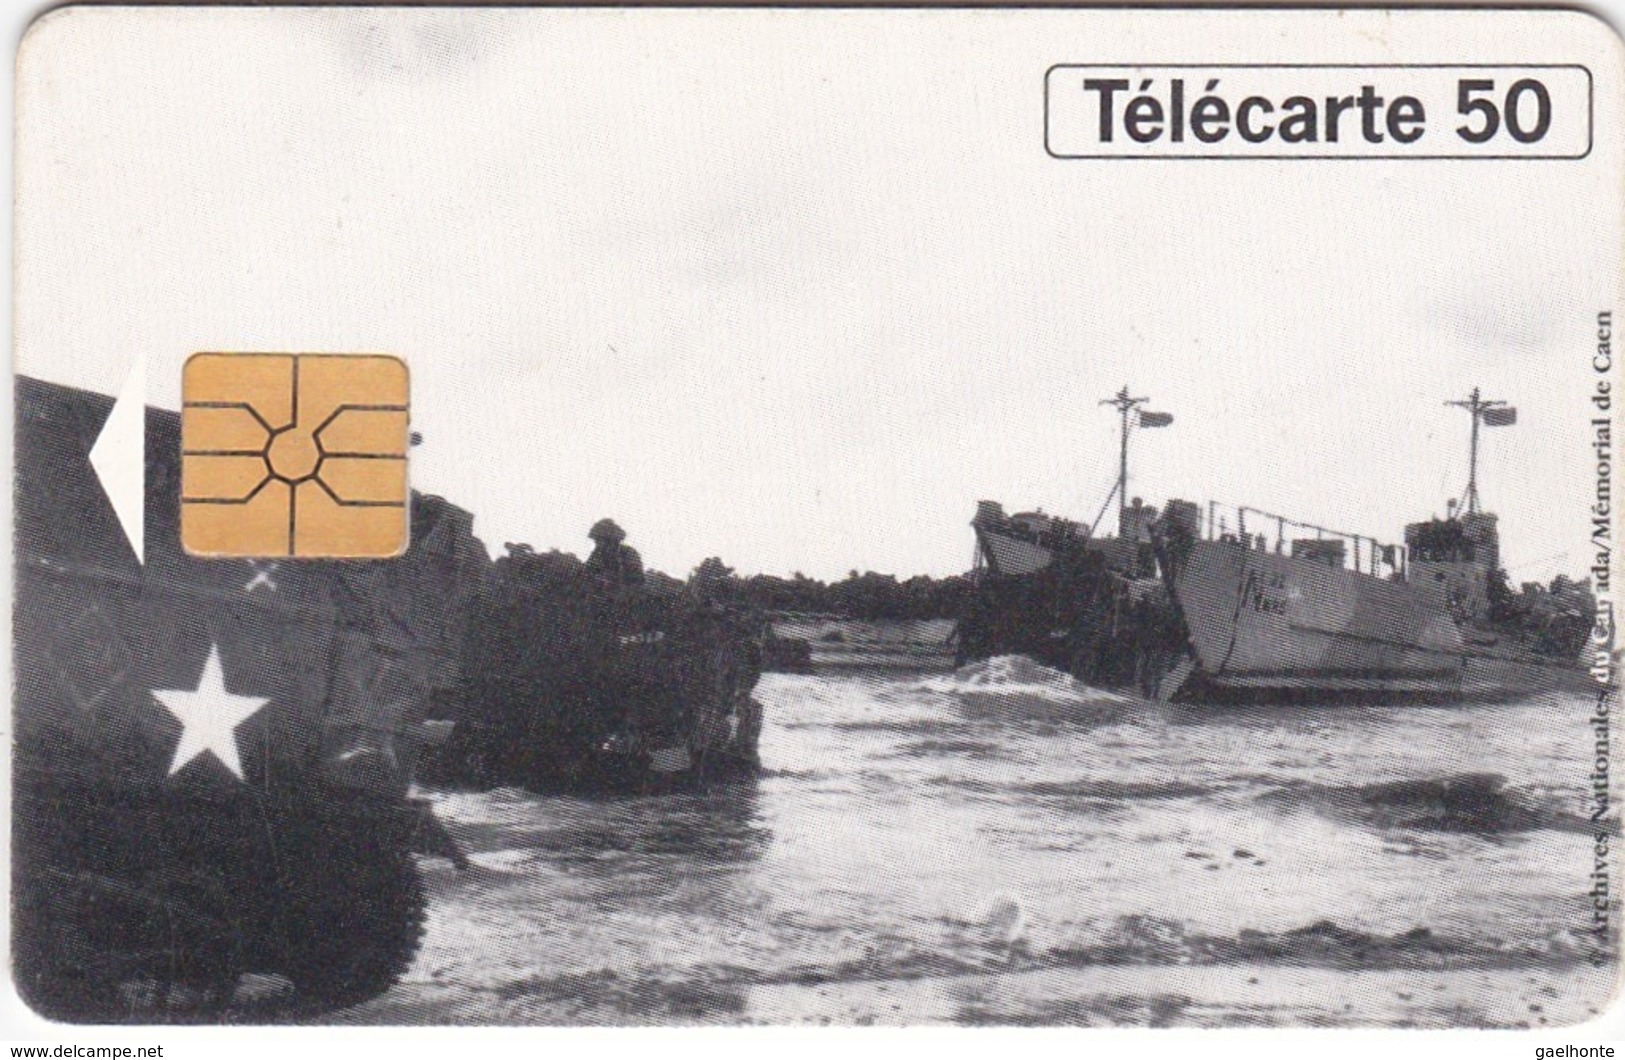 TC120 TÉLÉCARTE 50 UNITÉS - 1944-1994 - 50ème ANNIVERSAIRE DES DEBARQUEMENTS... - BERNIERES SUR MER 06 JUIN 1944 - Leger